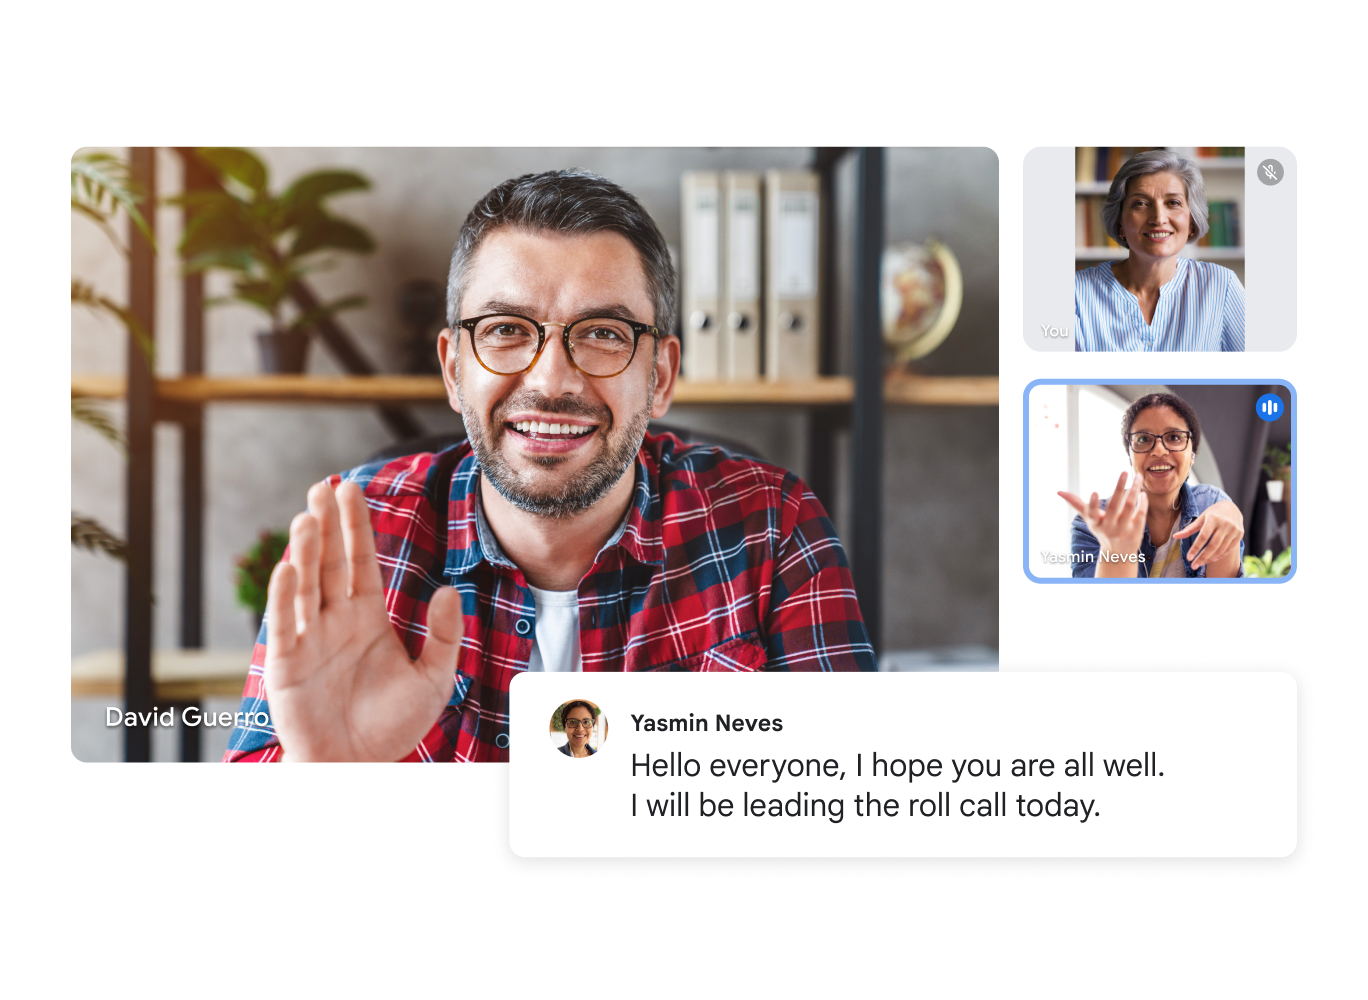 Google Meet görüntülü görüşmesinde üç katılımcı ve şu canlı altyazı gösteriliyor: "Merhaba. Herkes iyidir umarım. Bugün yoklamayı ben alacağım." 